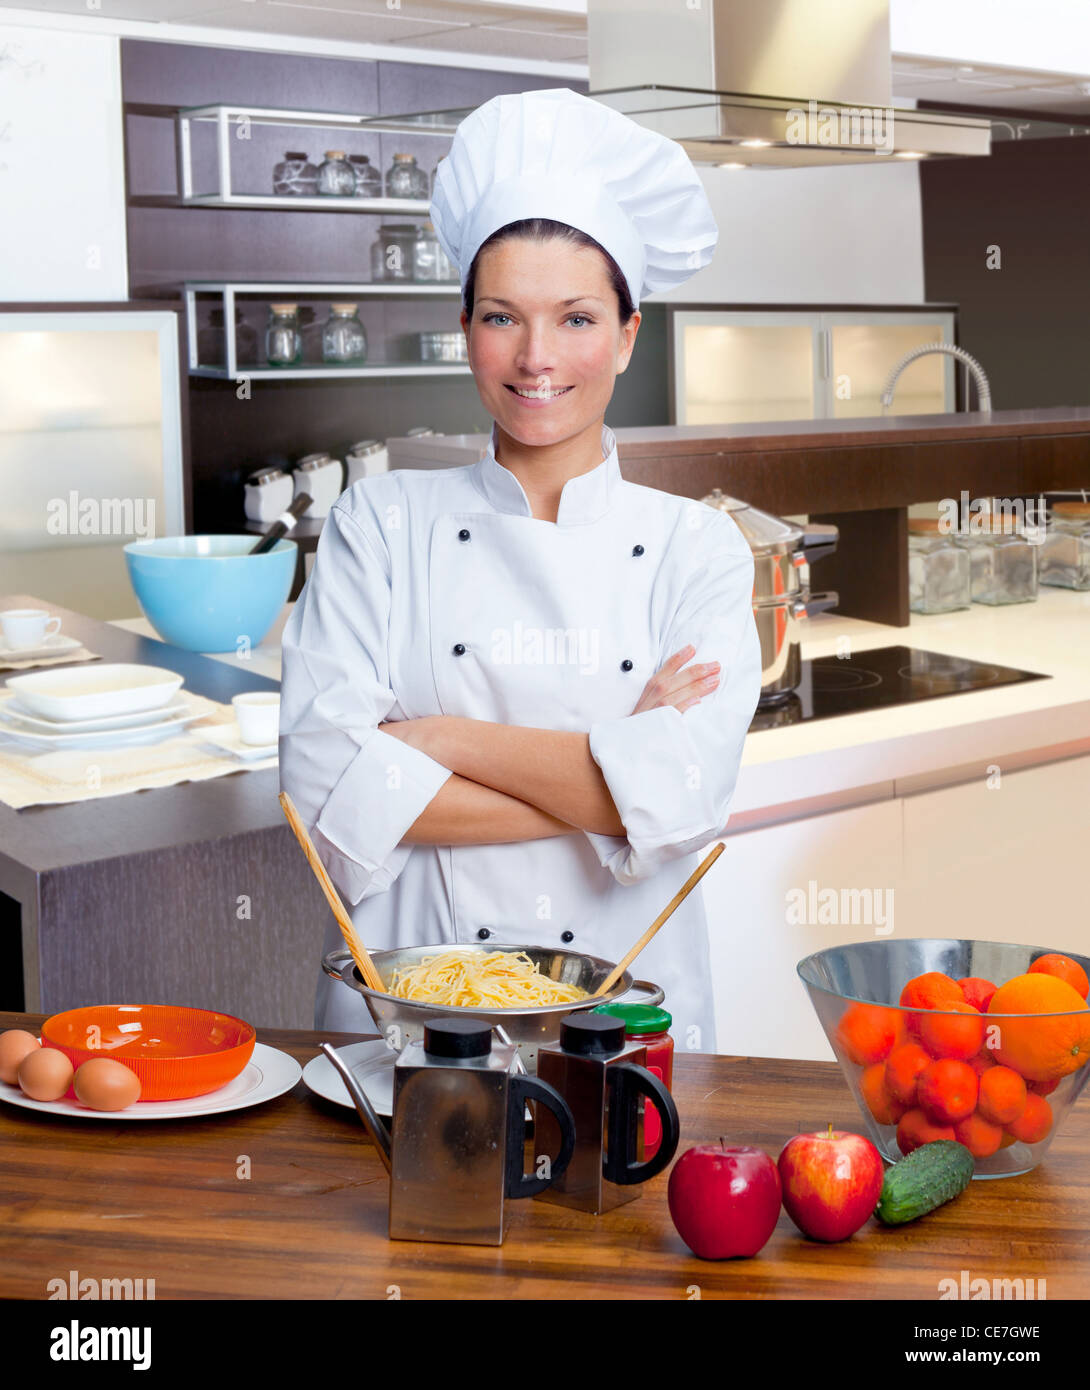 Portrait de femme chef d'uniforme blanc dans la cuisine Banque D'Images